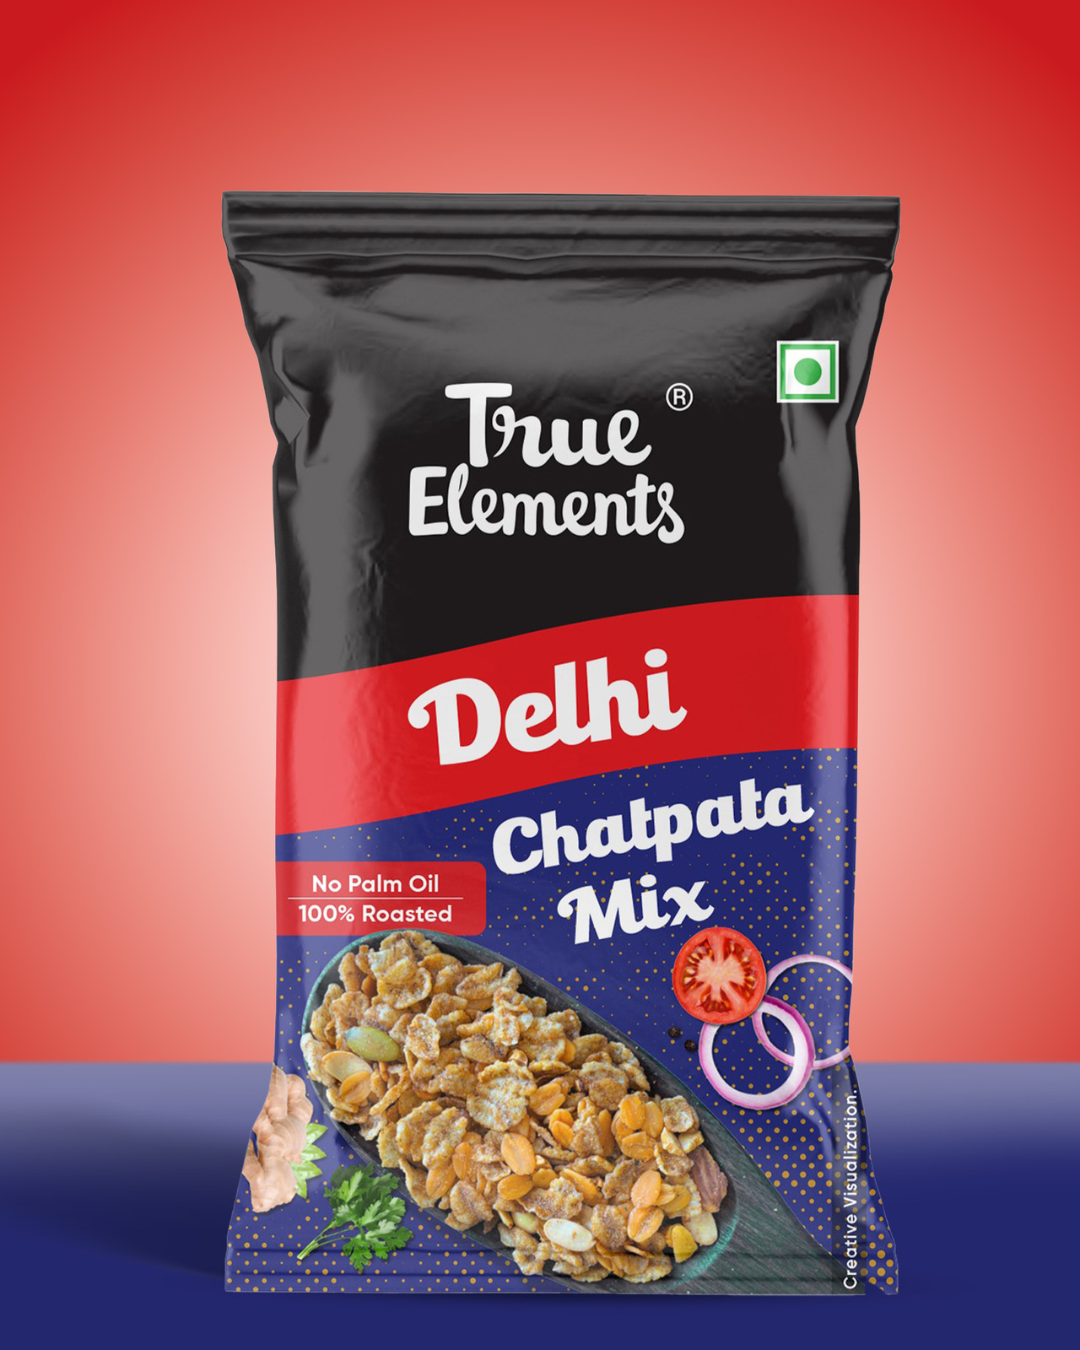 True-elements-delhi-chatpata-mix